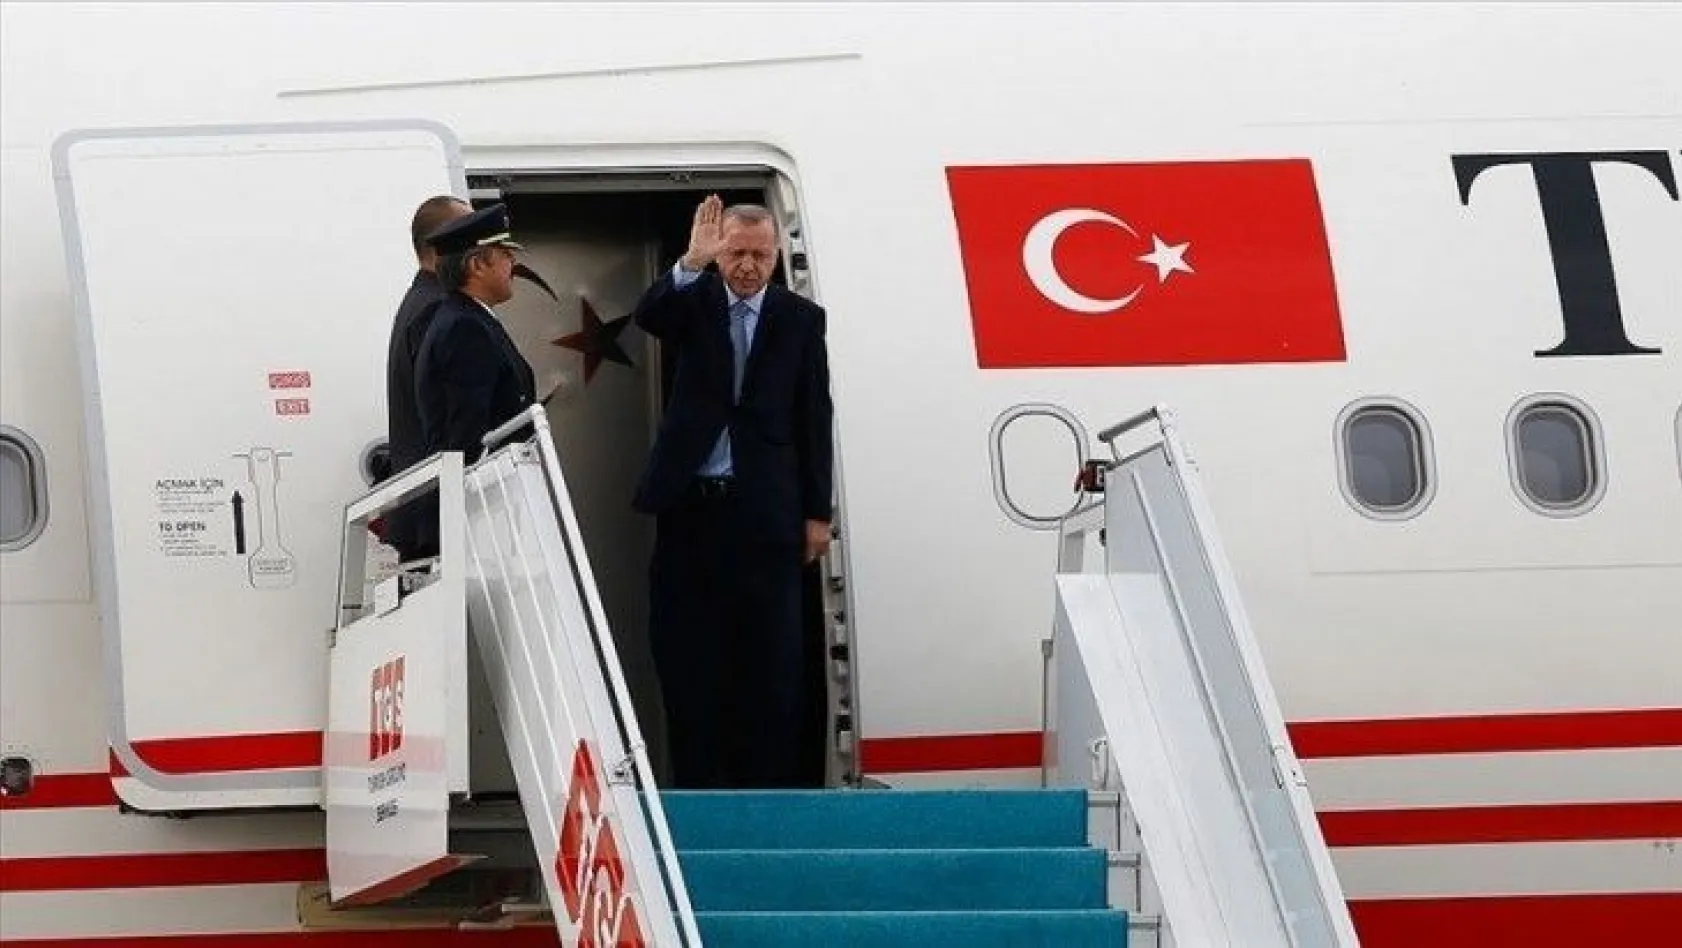 Erdoğan Katar'a gidiyor